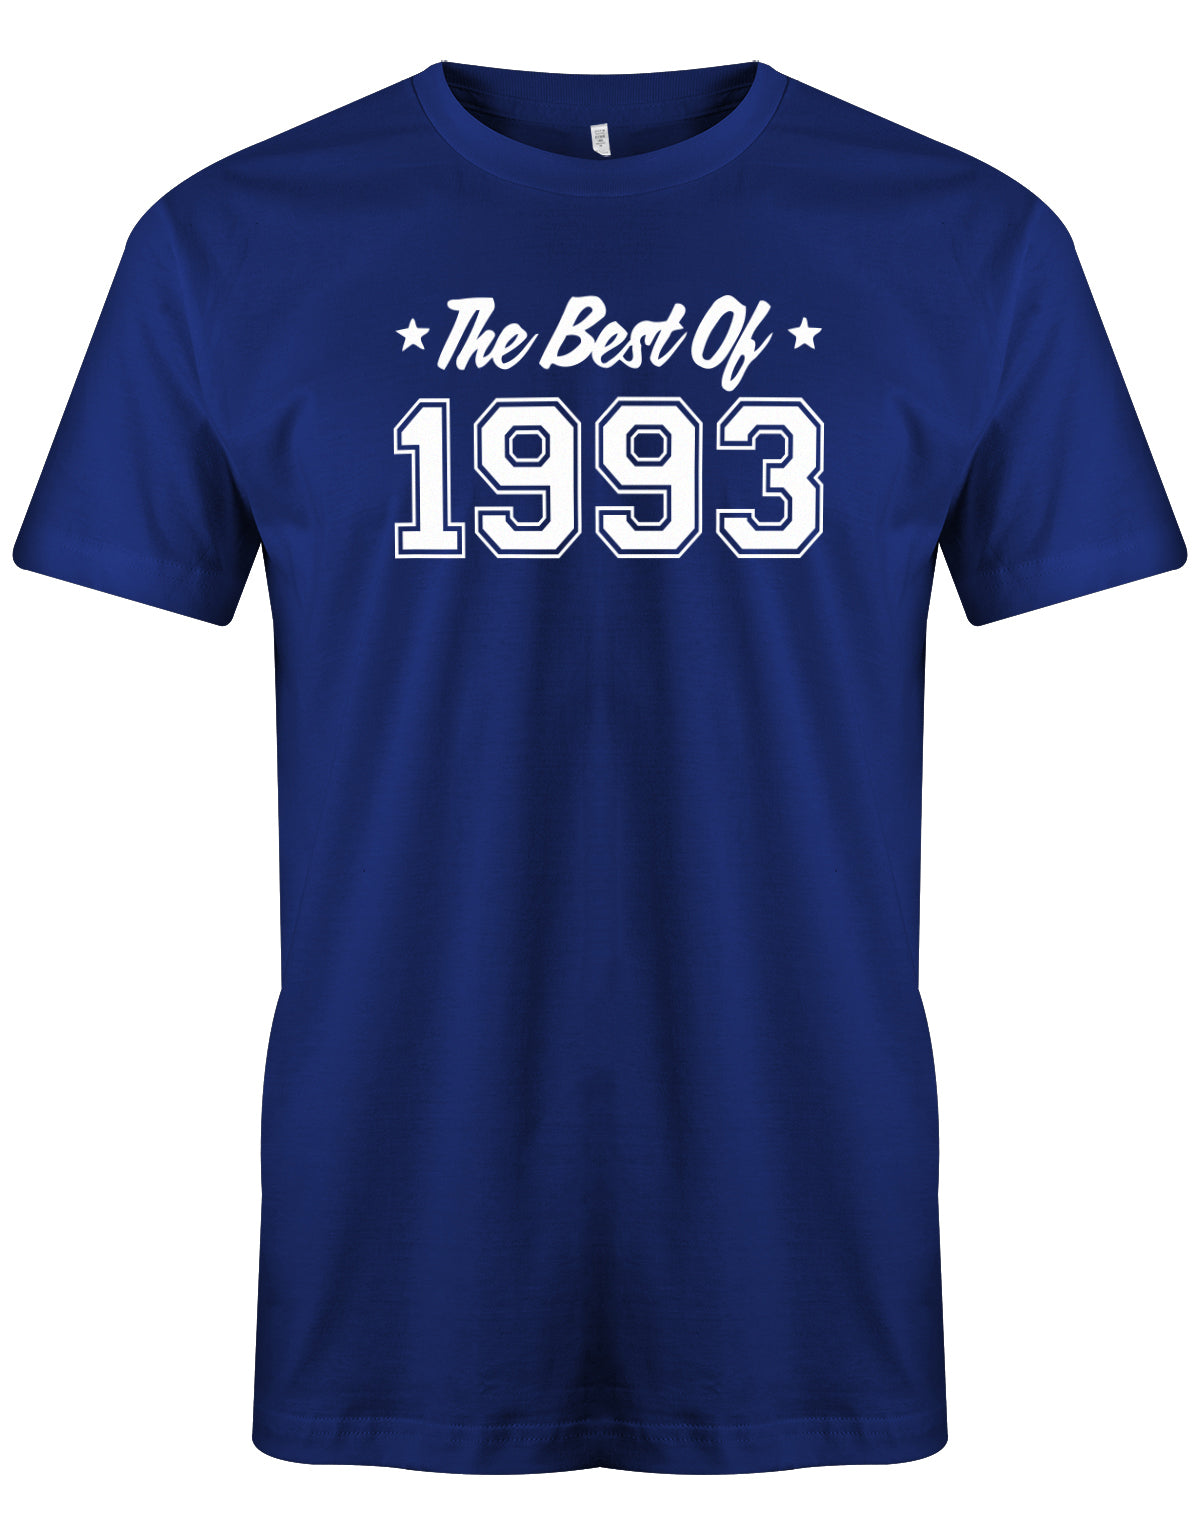 Cooles T-Shirt zum 30 Geburtstag für den Mann Bedruckt mit: The best of 1993 - das beste aus 1993. Das 30 Geburtstag Männer Shirt Lustig ist eine super Geschenkidee für alle 30 Jährigen. Man wird nur einmal 30 Jahre. 30 geburtstag Männer Shirt ✓ 1993 geburtstag shirt ✓ t-shirt zum 30 geburtstag mann ✓ shirt 30 mann Royalblau